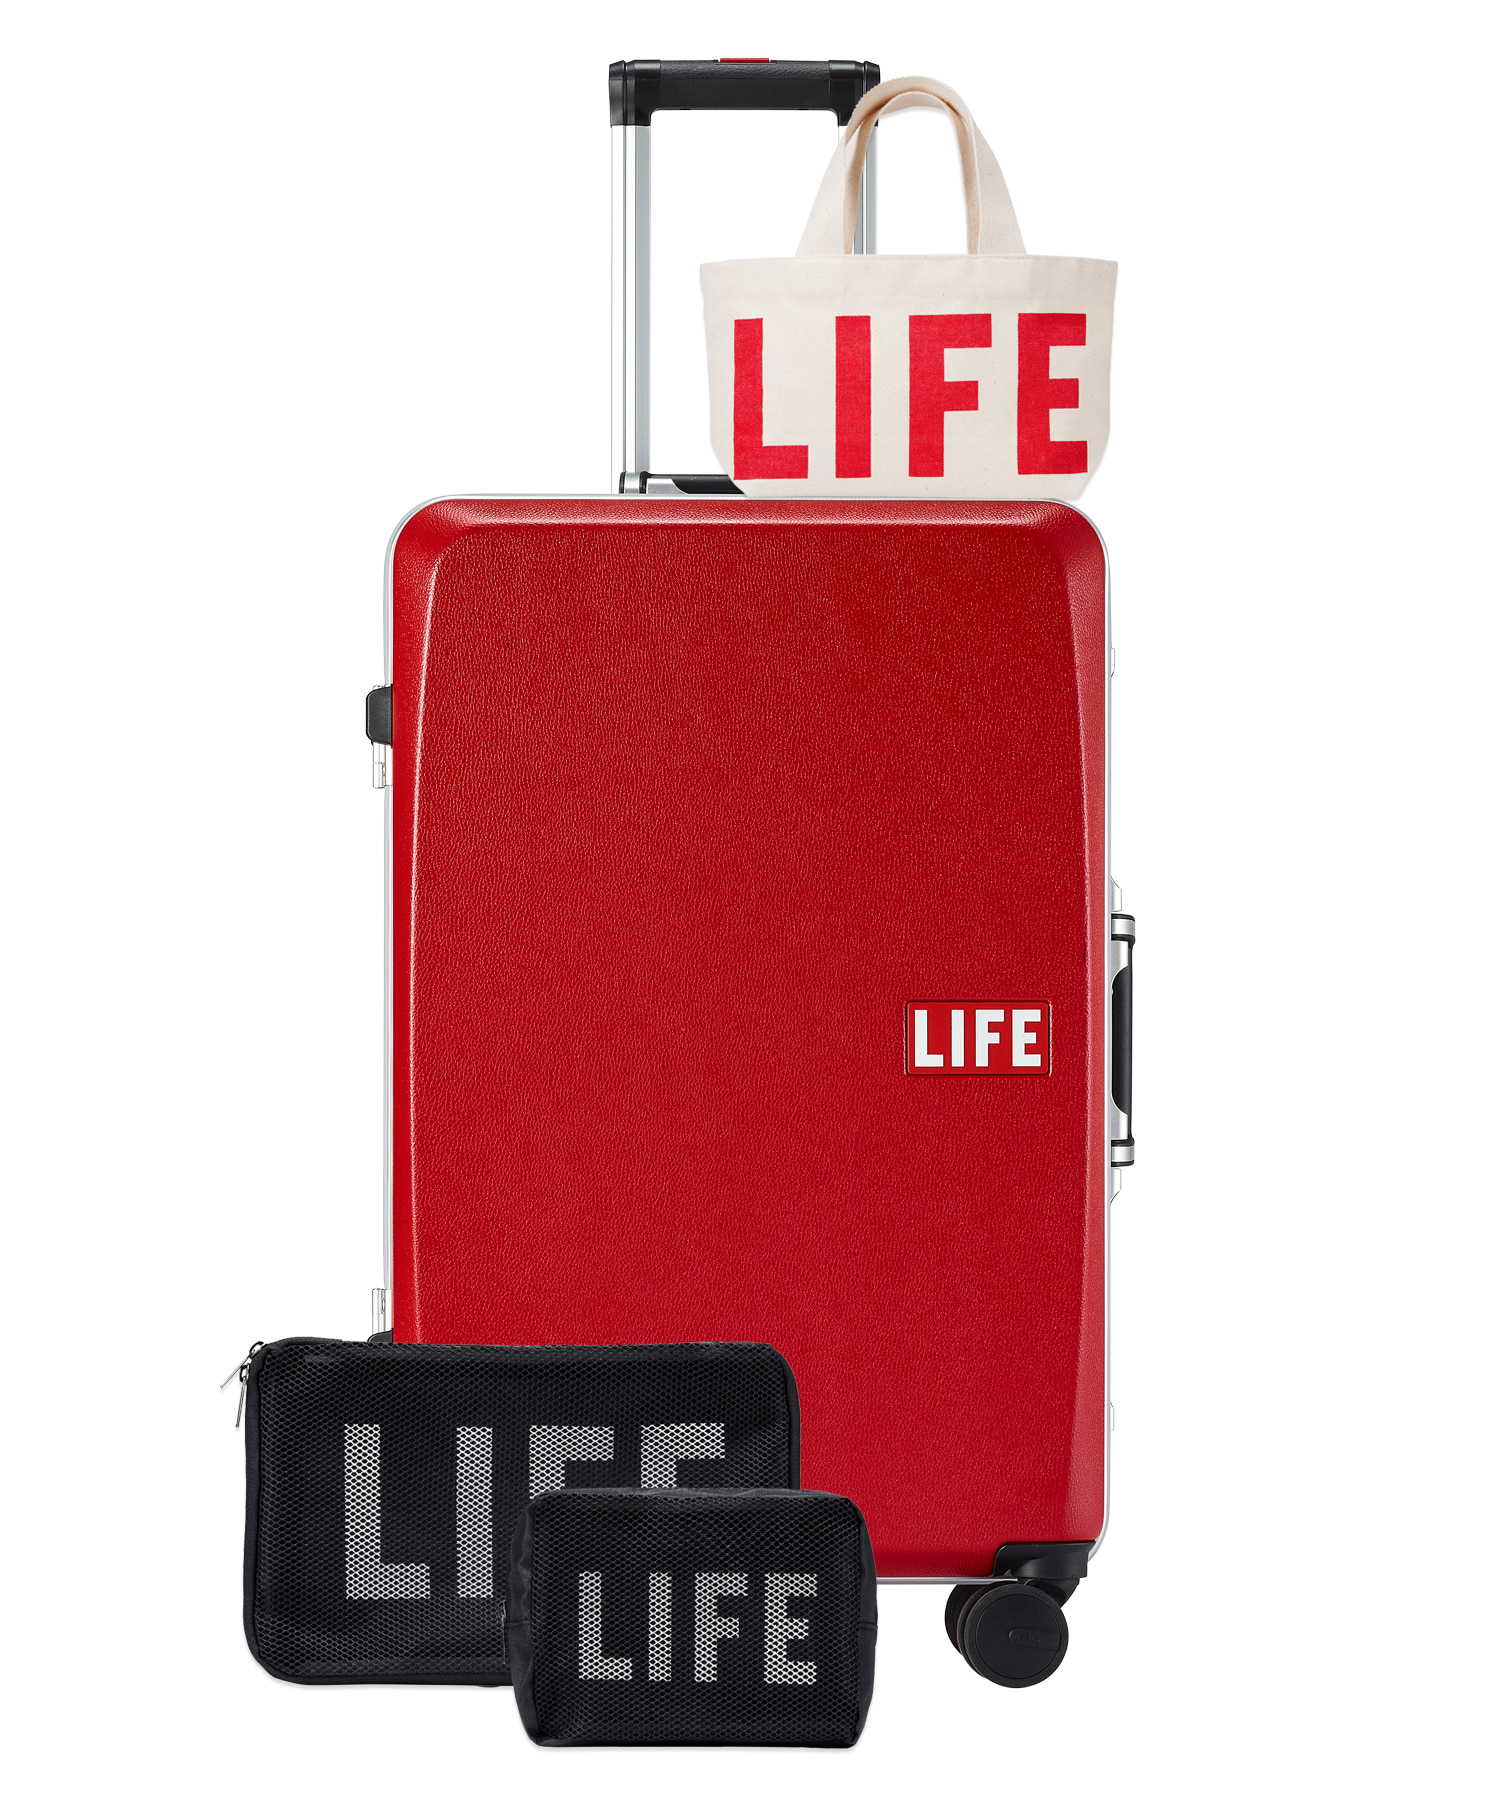 자체브랜드 [회원전용혜택]LIFE CLASSIC LUGGAGE 96L_RED 라이프,LIFE, LIFE ARCHIVE, 일회용 카메라, 카메라